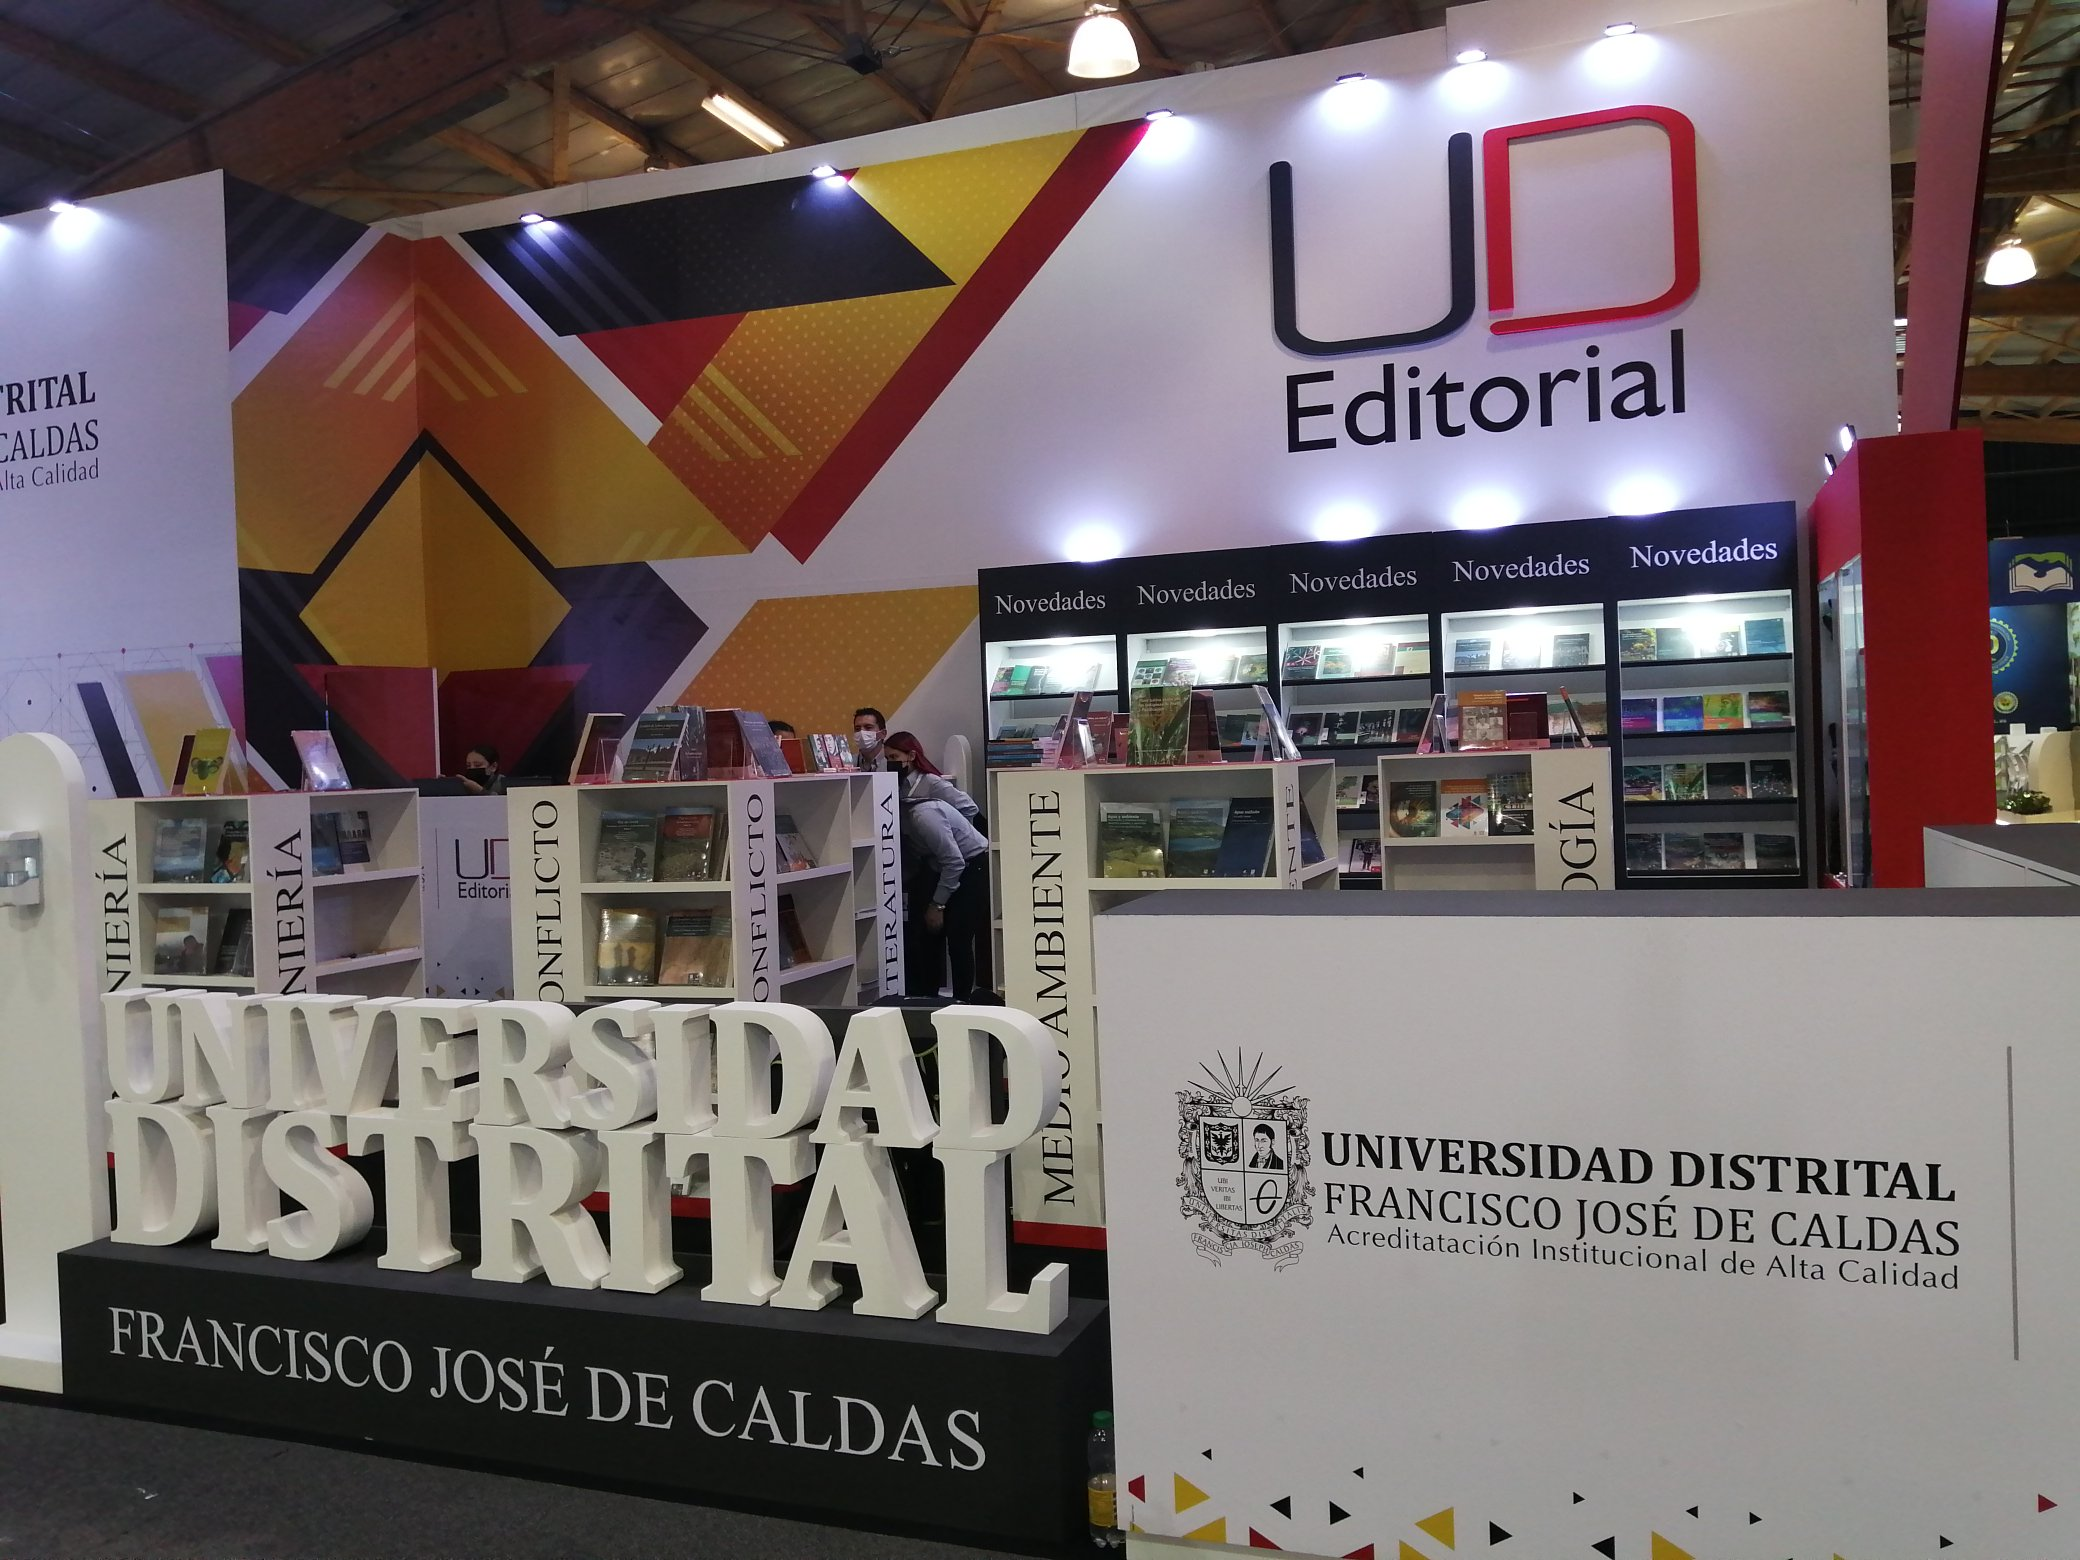 Imagen noticia Feria del Libro de la Universidad Distrital